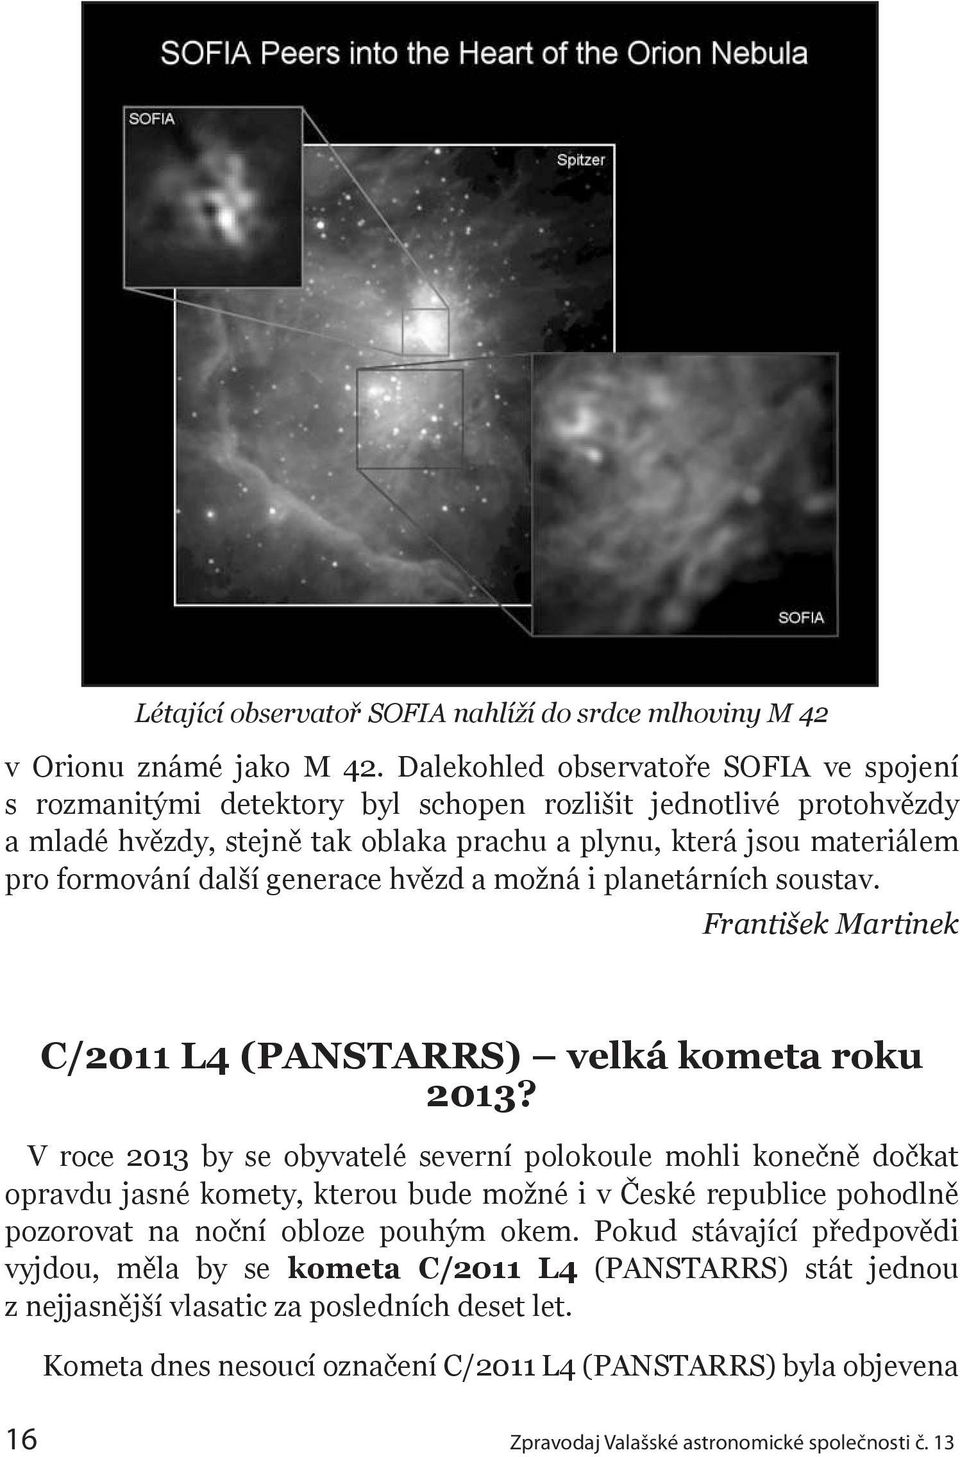 generace hvězd a možná i planetárních soustav. František Martinek C/2011 L4 (PANSTARRS) velká kometa roku 2013?